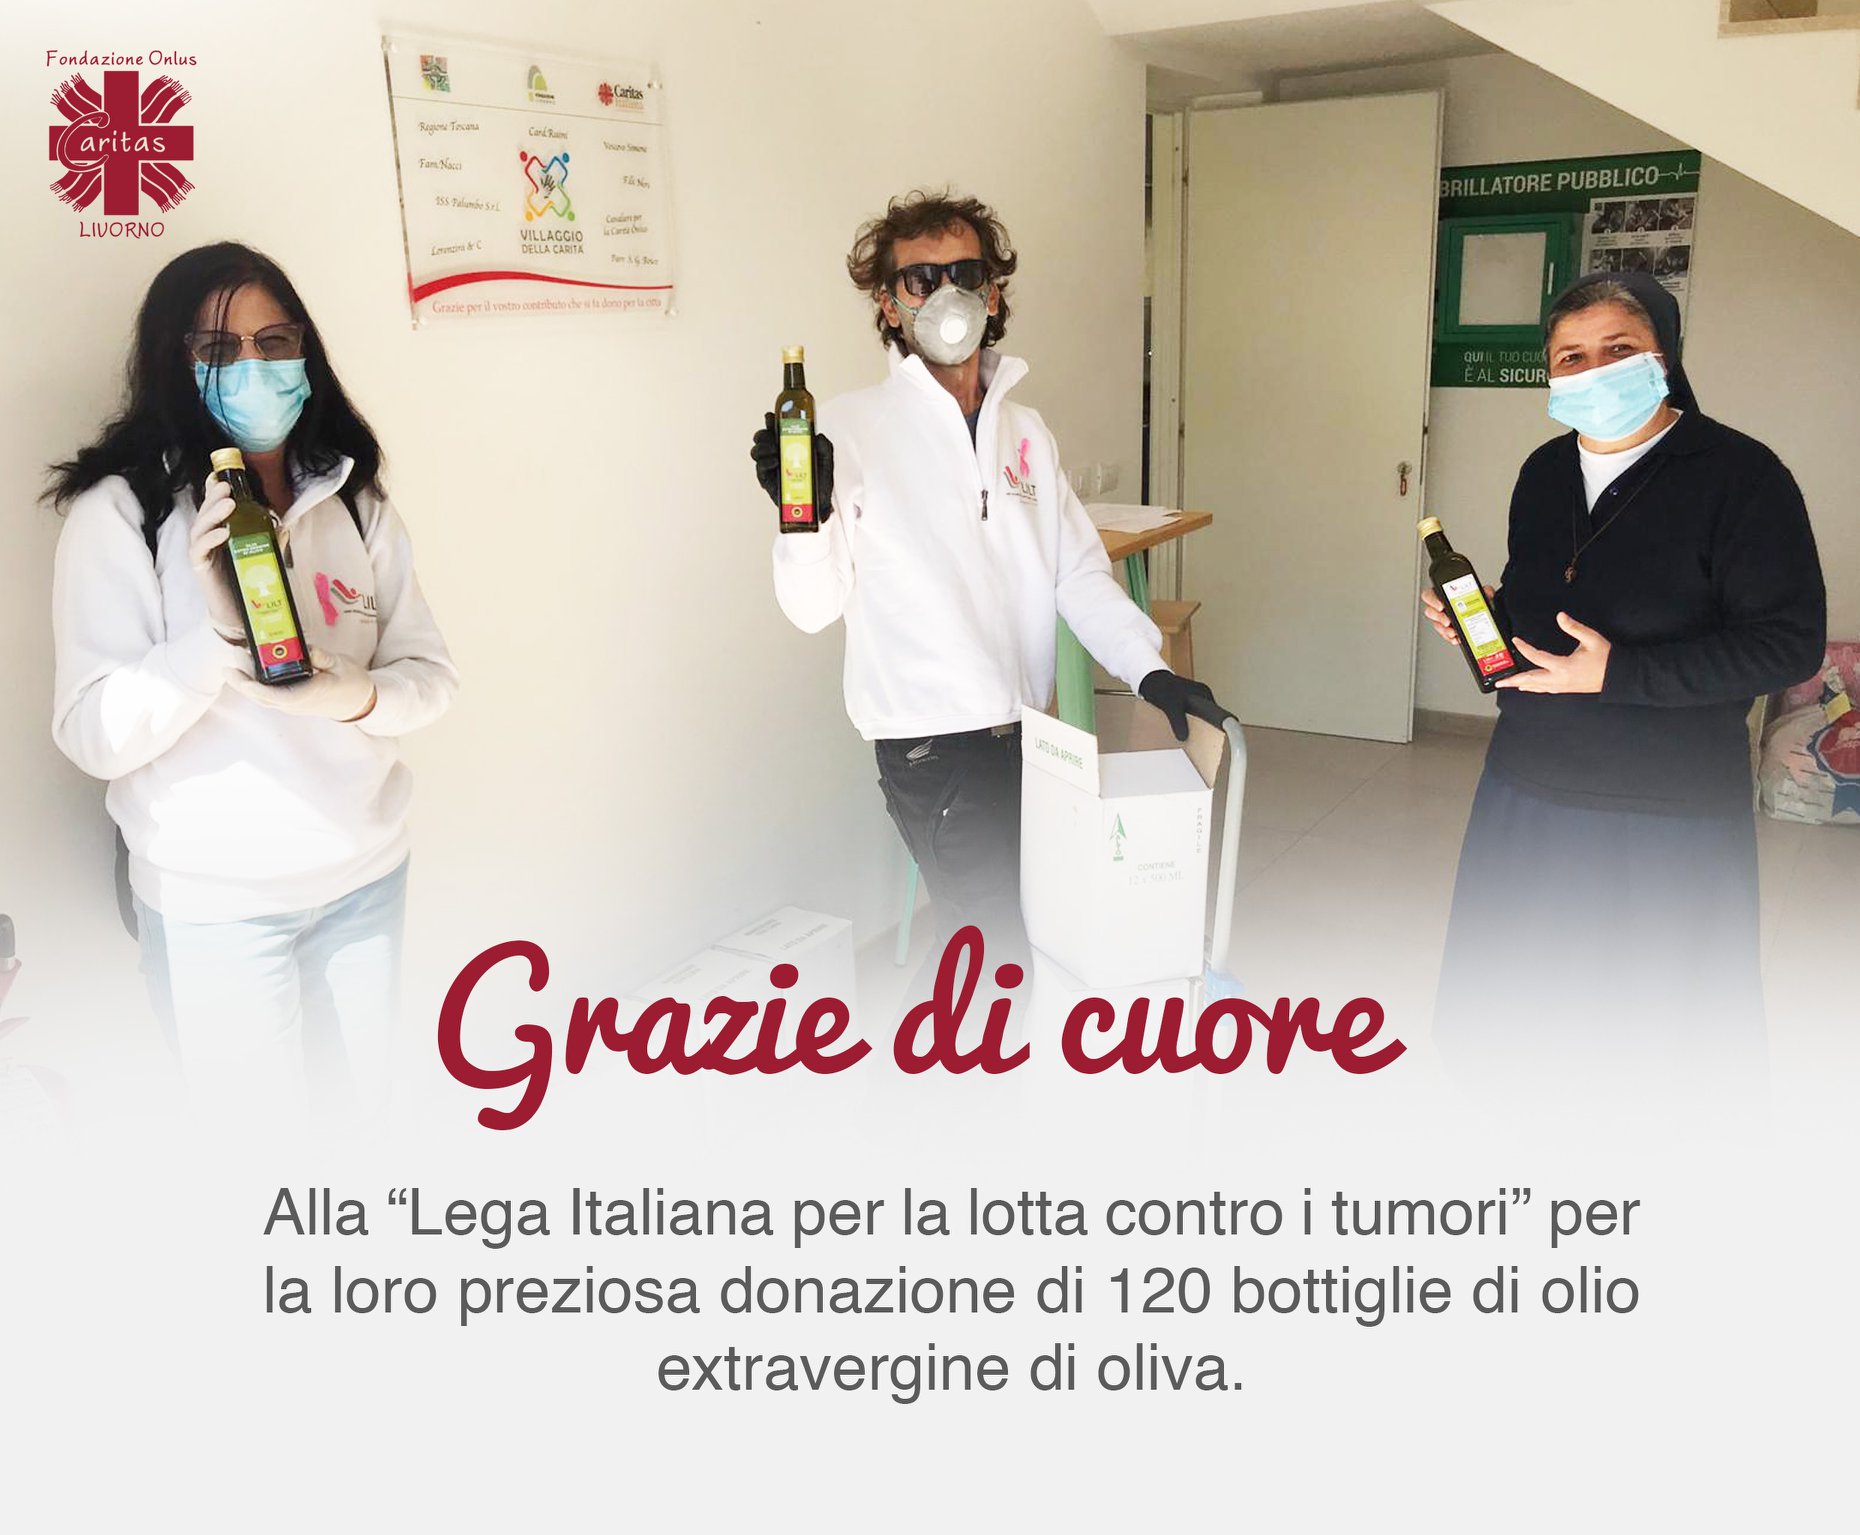 Grazie di cuore alla “Lega italiana per la lotta contro i tumori”